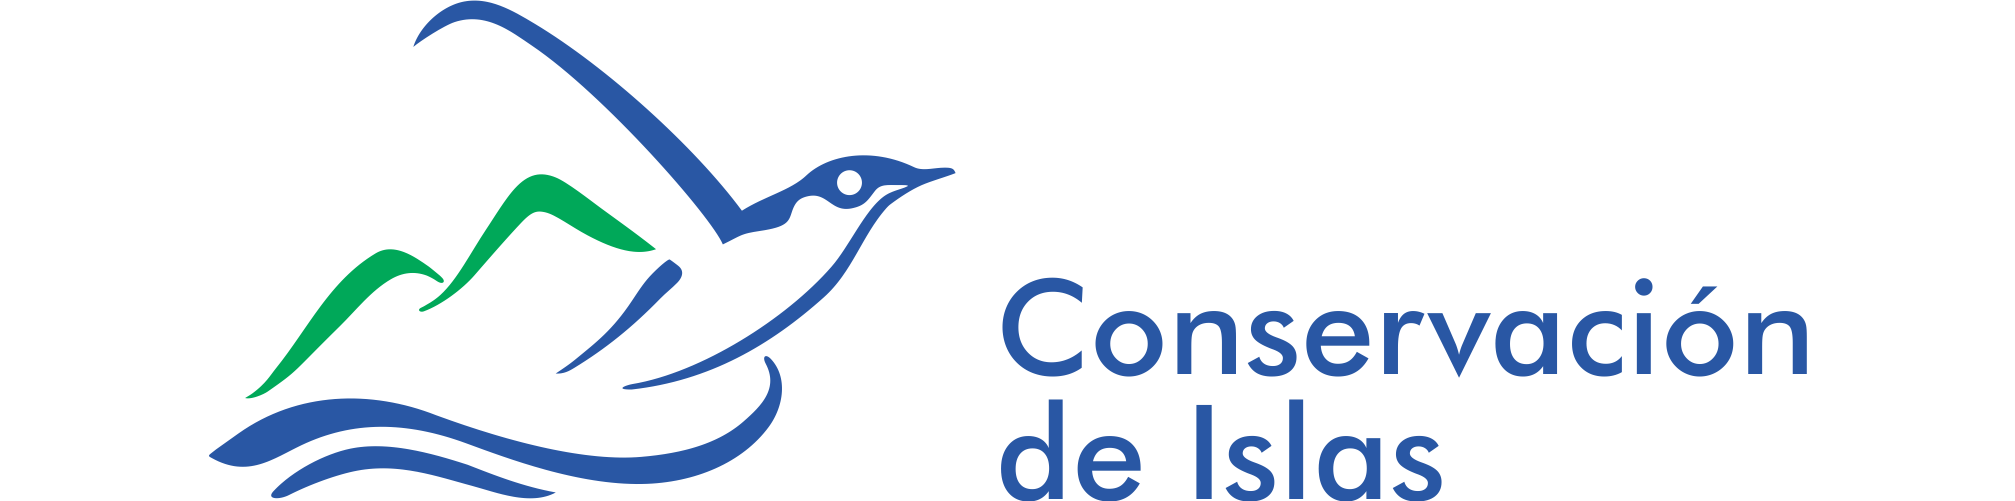 conservacion logo